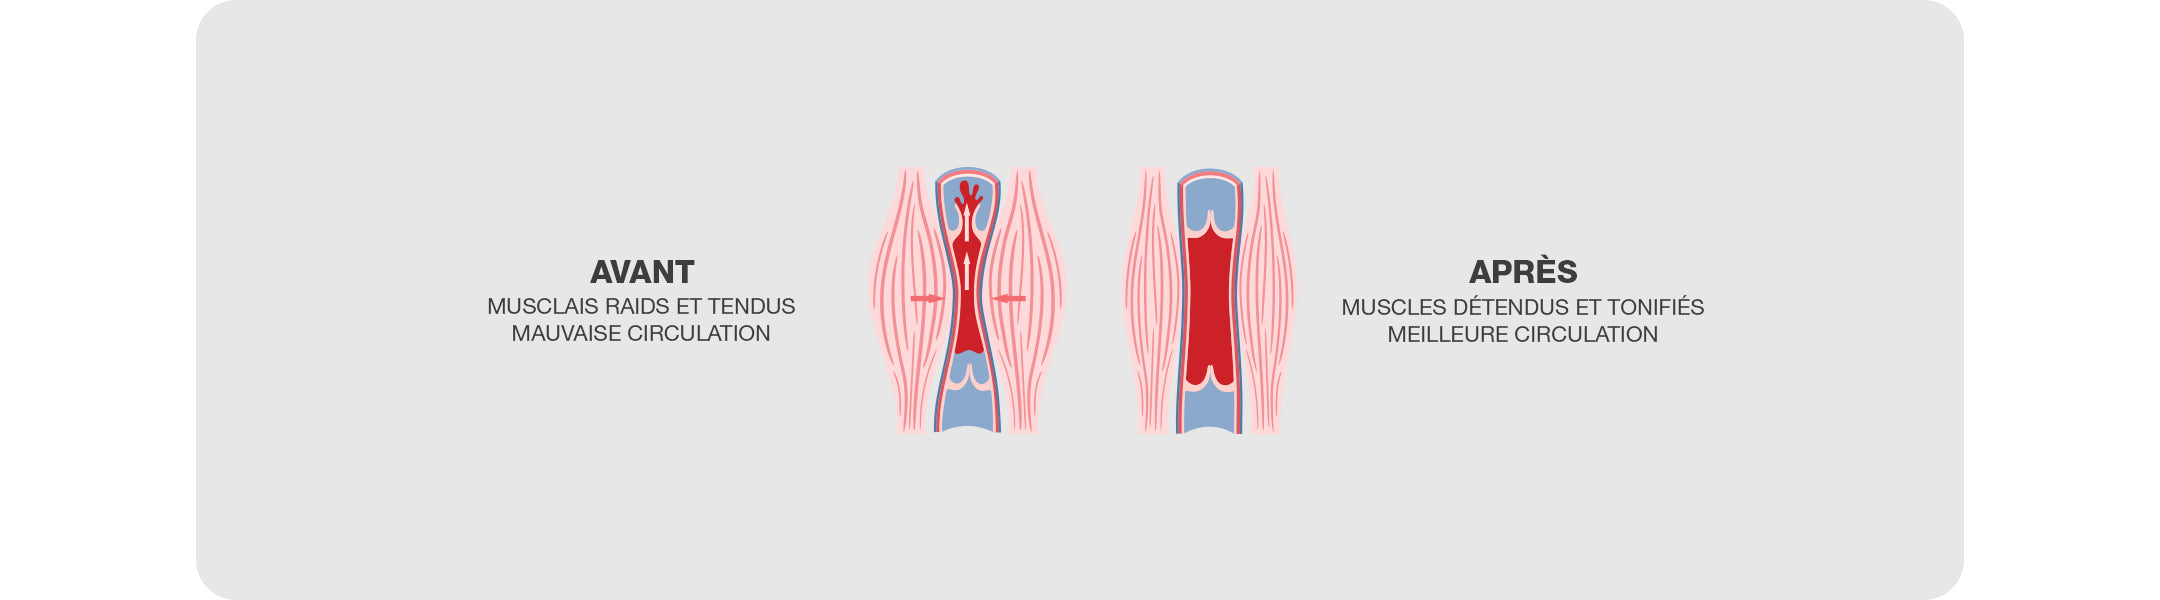 Effets positifs de la chaleur infrarouge sur les tissus musculaires